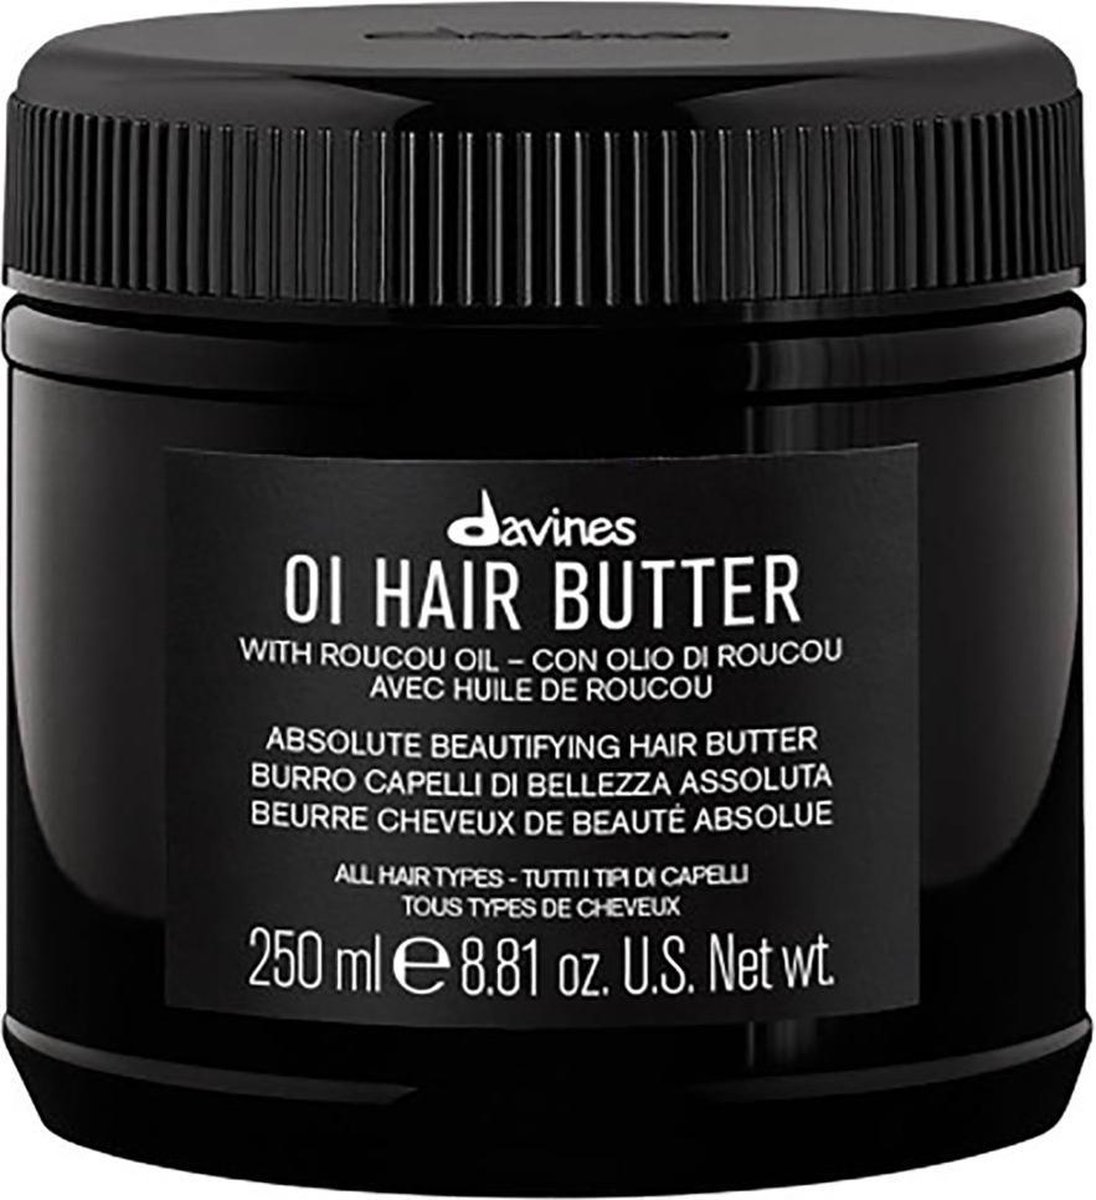 Davines OI Hair Butter 250 ml - Haarmasker beschadigd haar